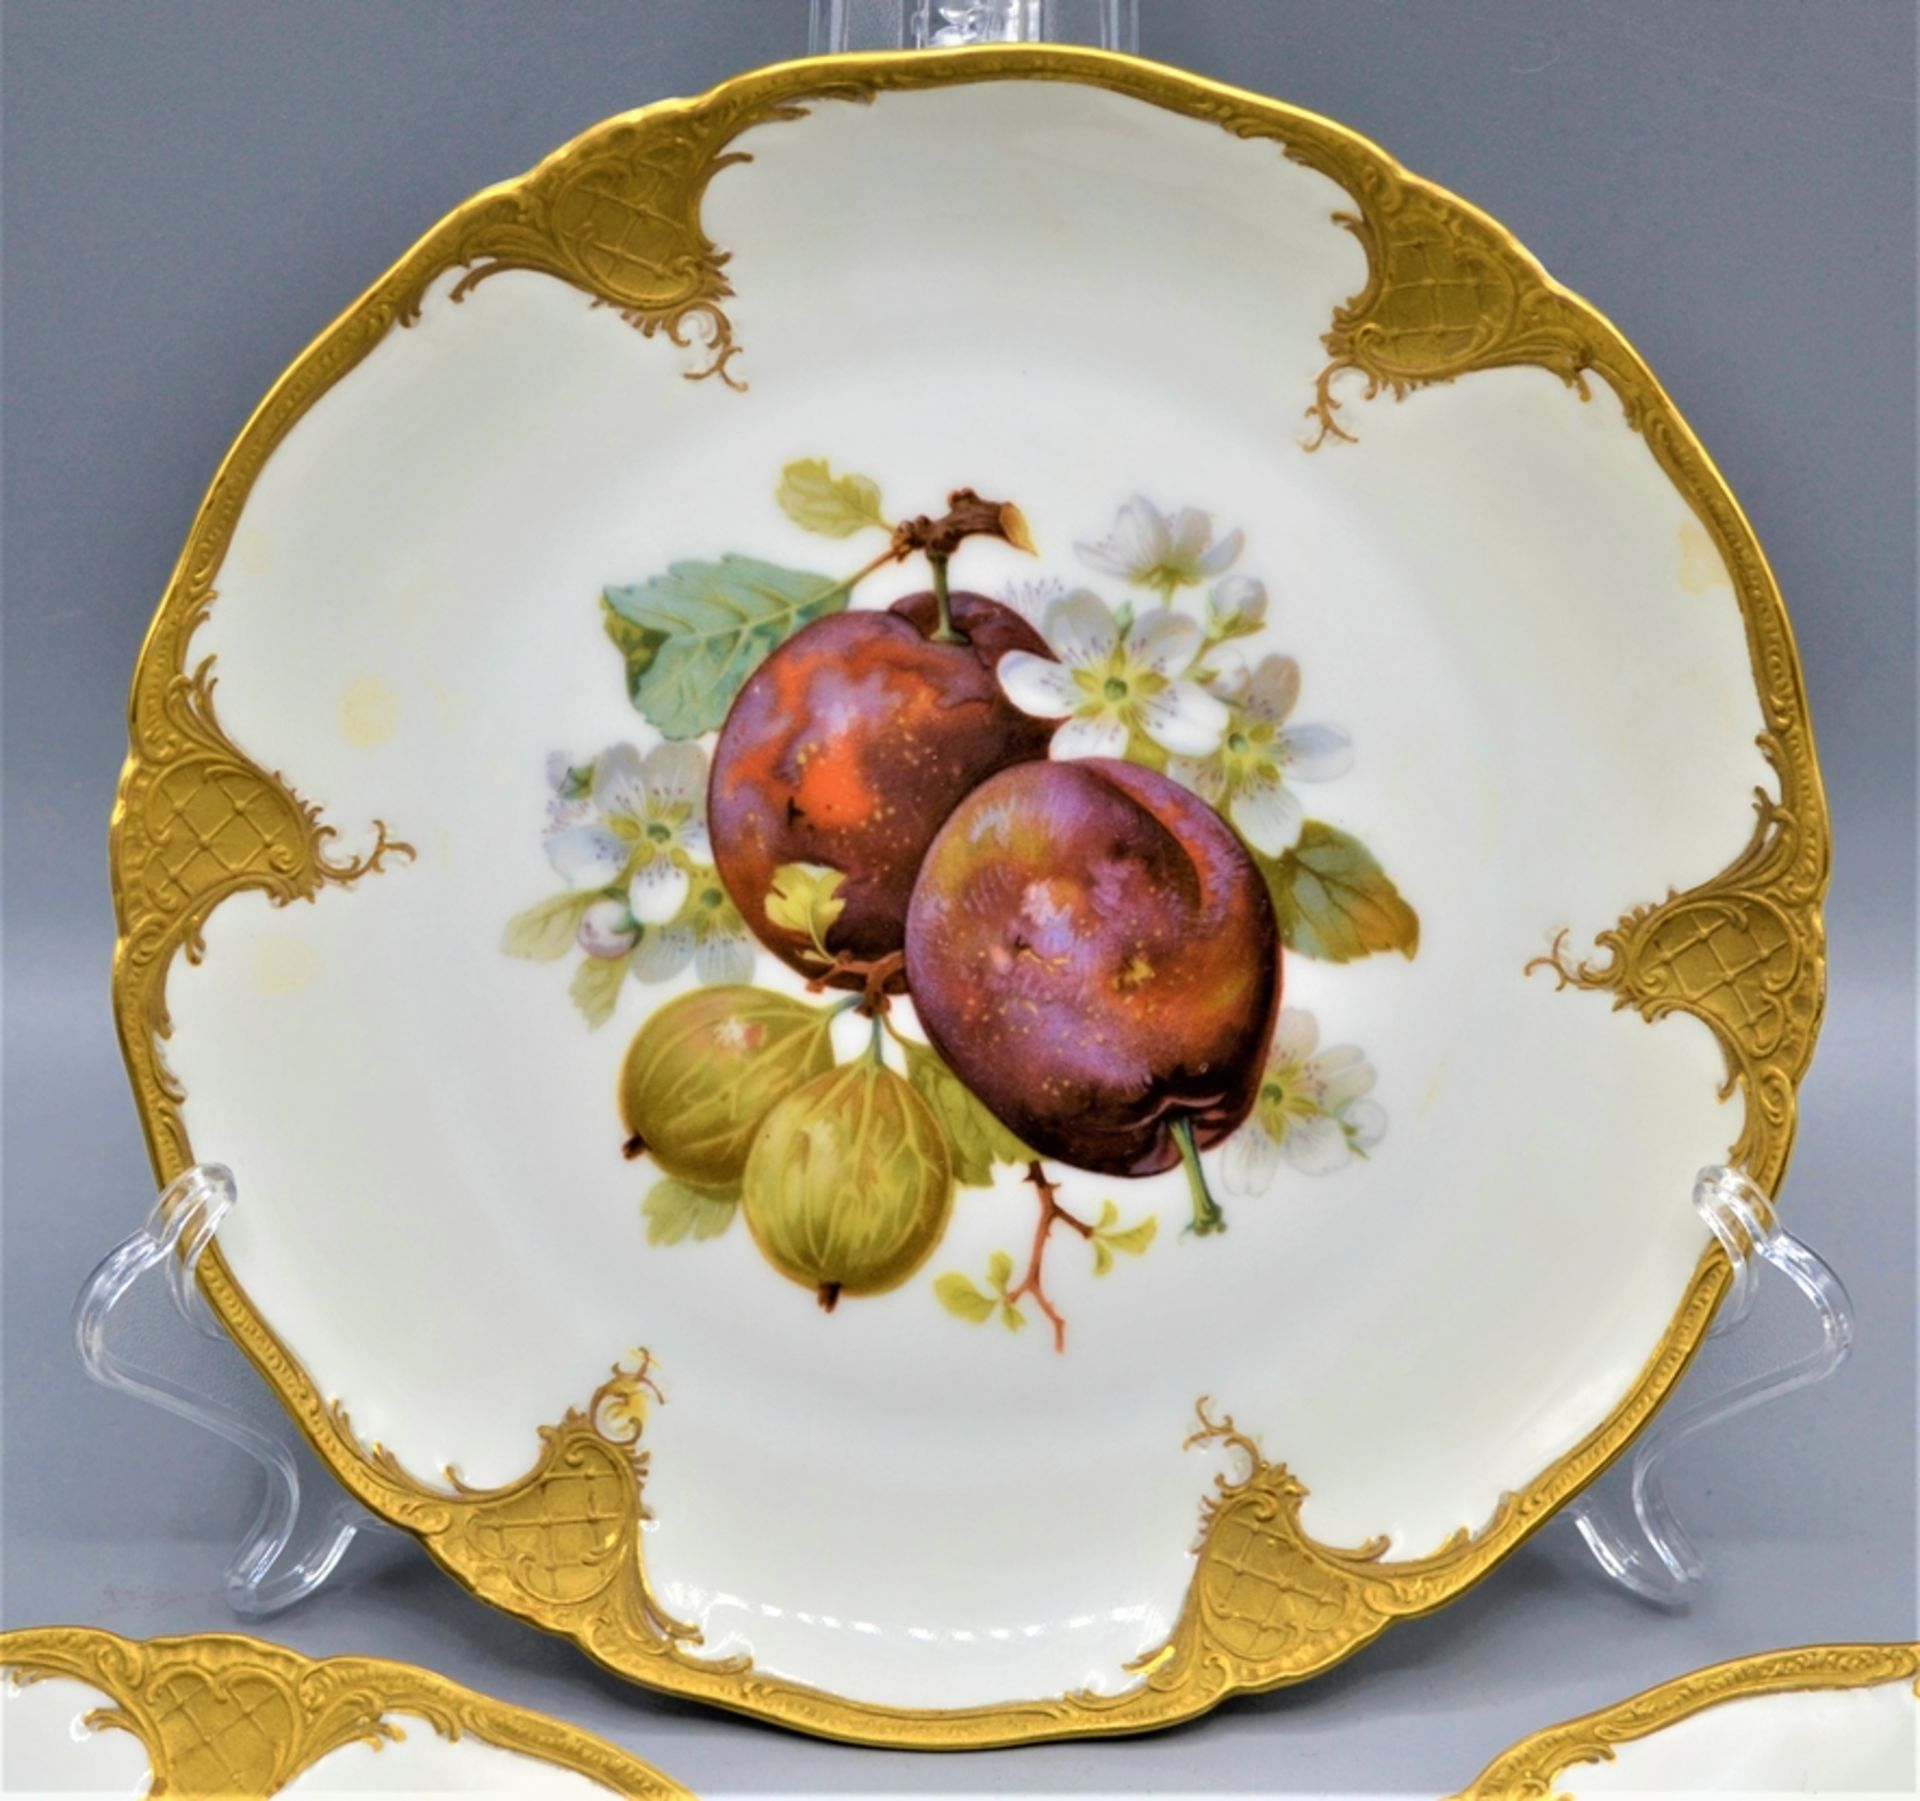 Fürstenberg Porzellan Obstteller Prunkteller mit Goldrand 3 Stück, handbemalt, Ø 21 cm - Image 2 of 5